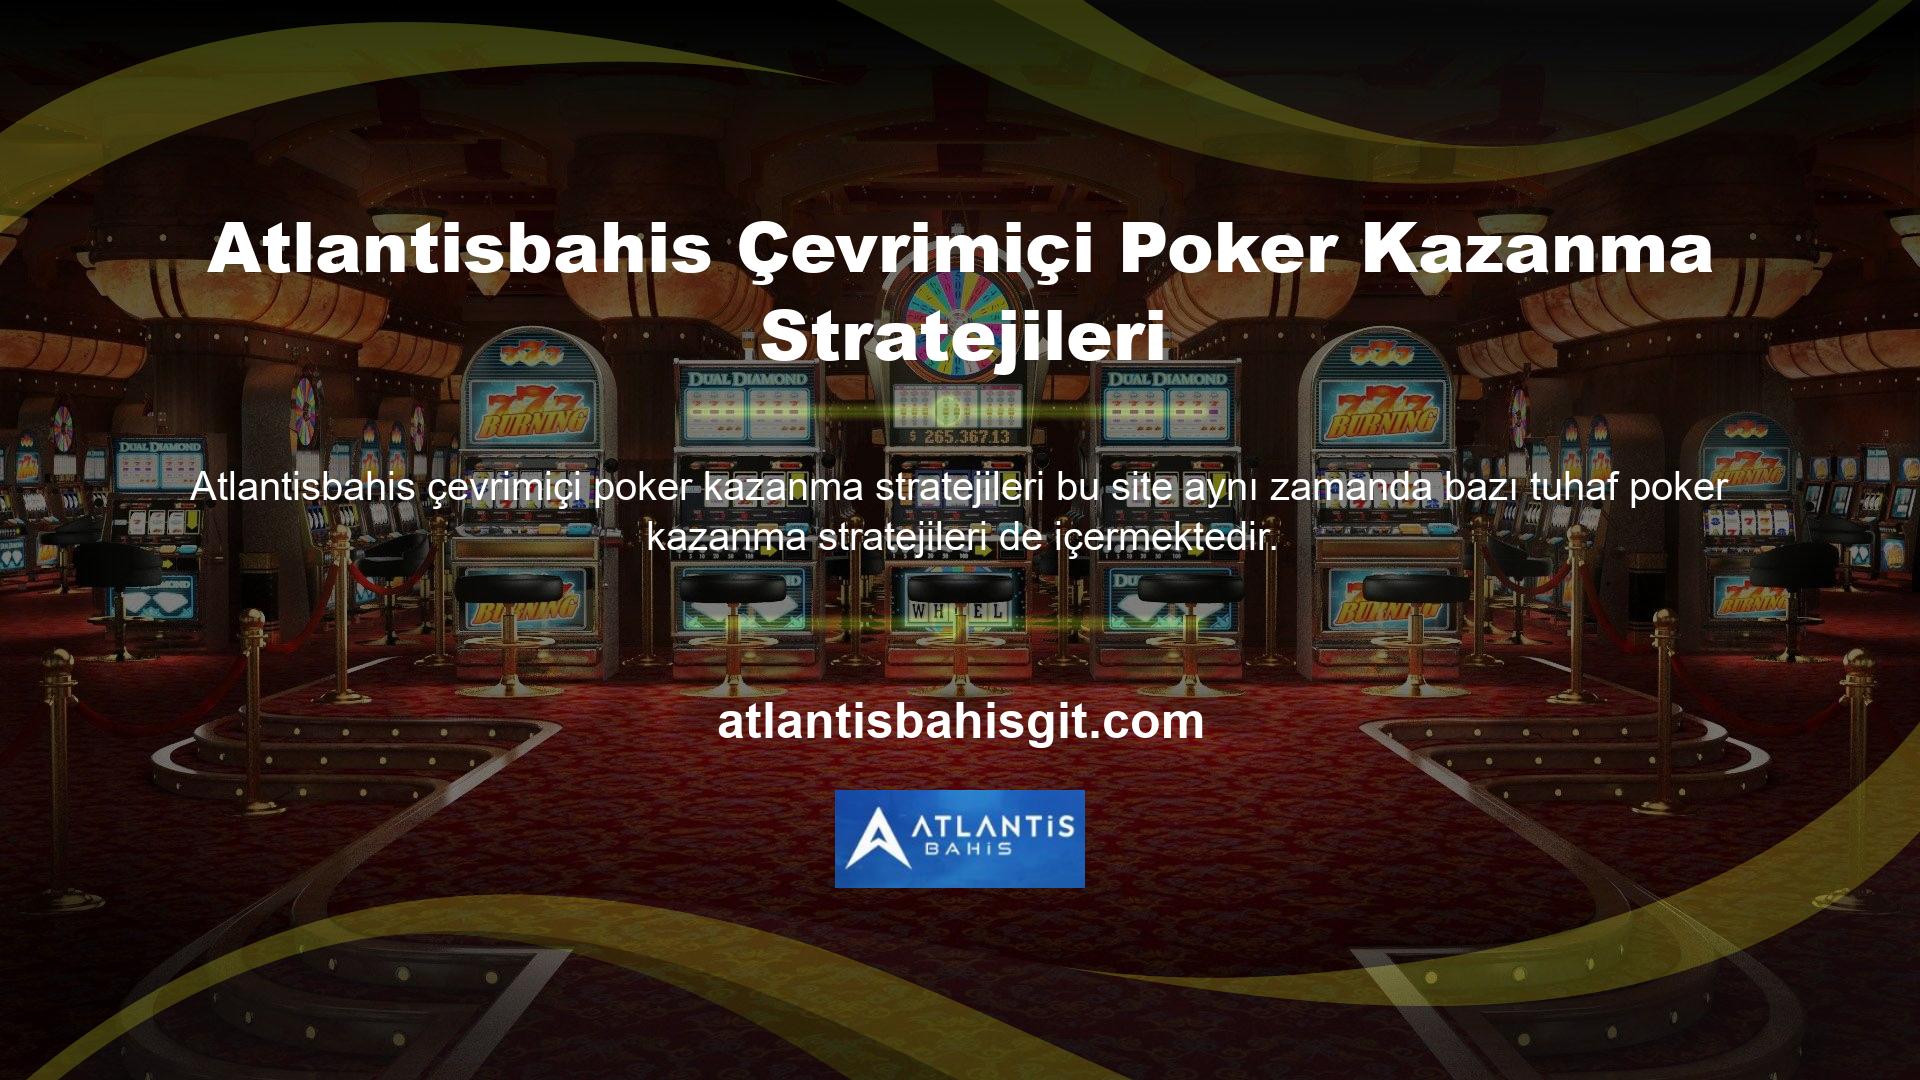 Özellikle poker tutkunlarının ilgisini çeken Atlantisbahis çevrimiçi poker kazanma stratejisini incelemek istiyorsanız öğrenmeniz gereken ilk şey deneyimdir